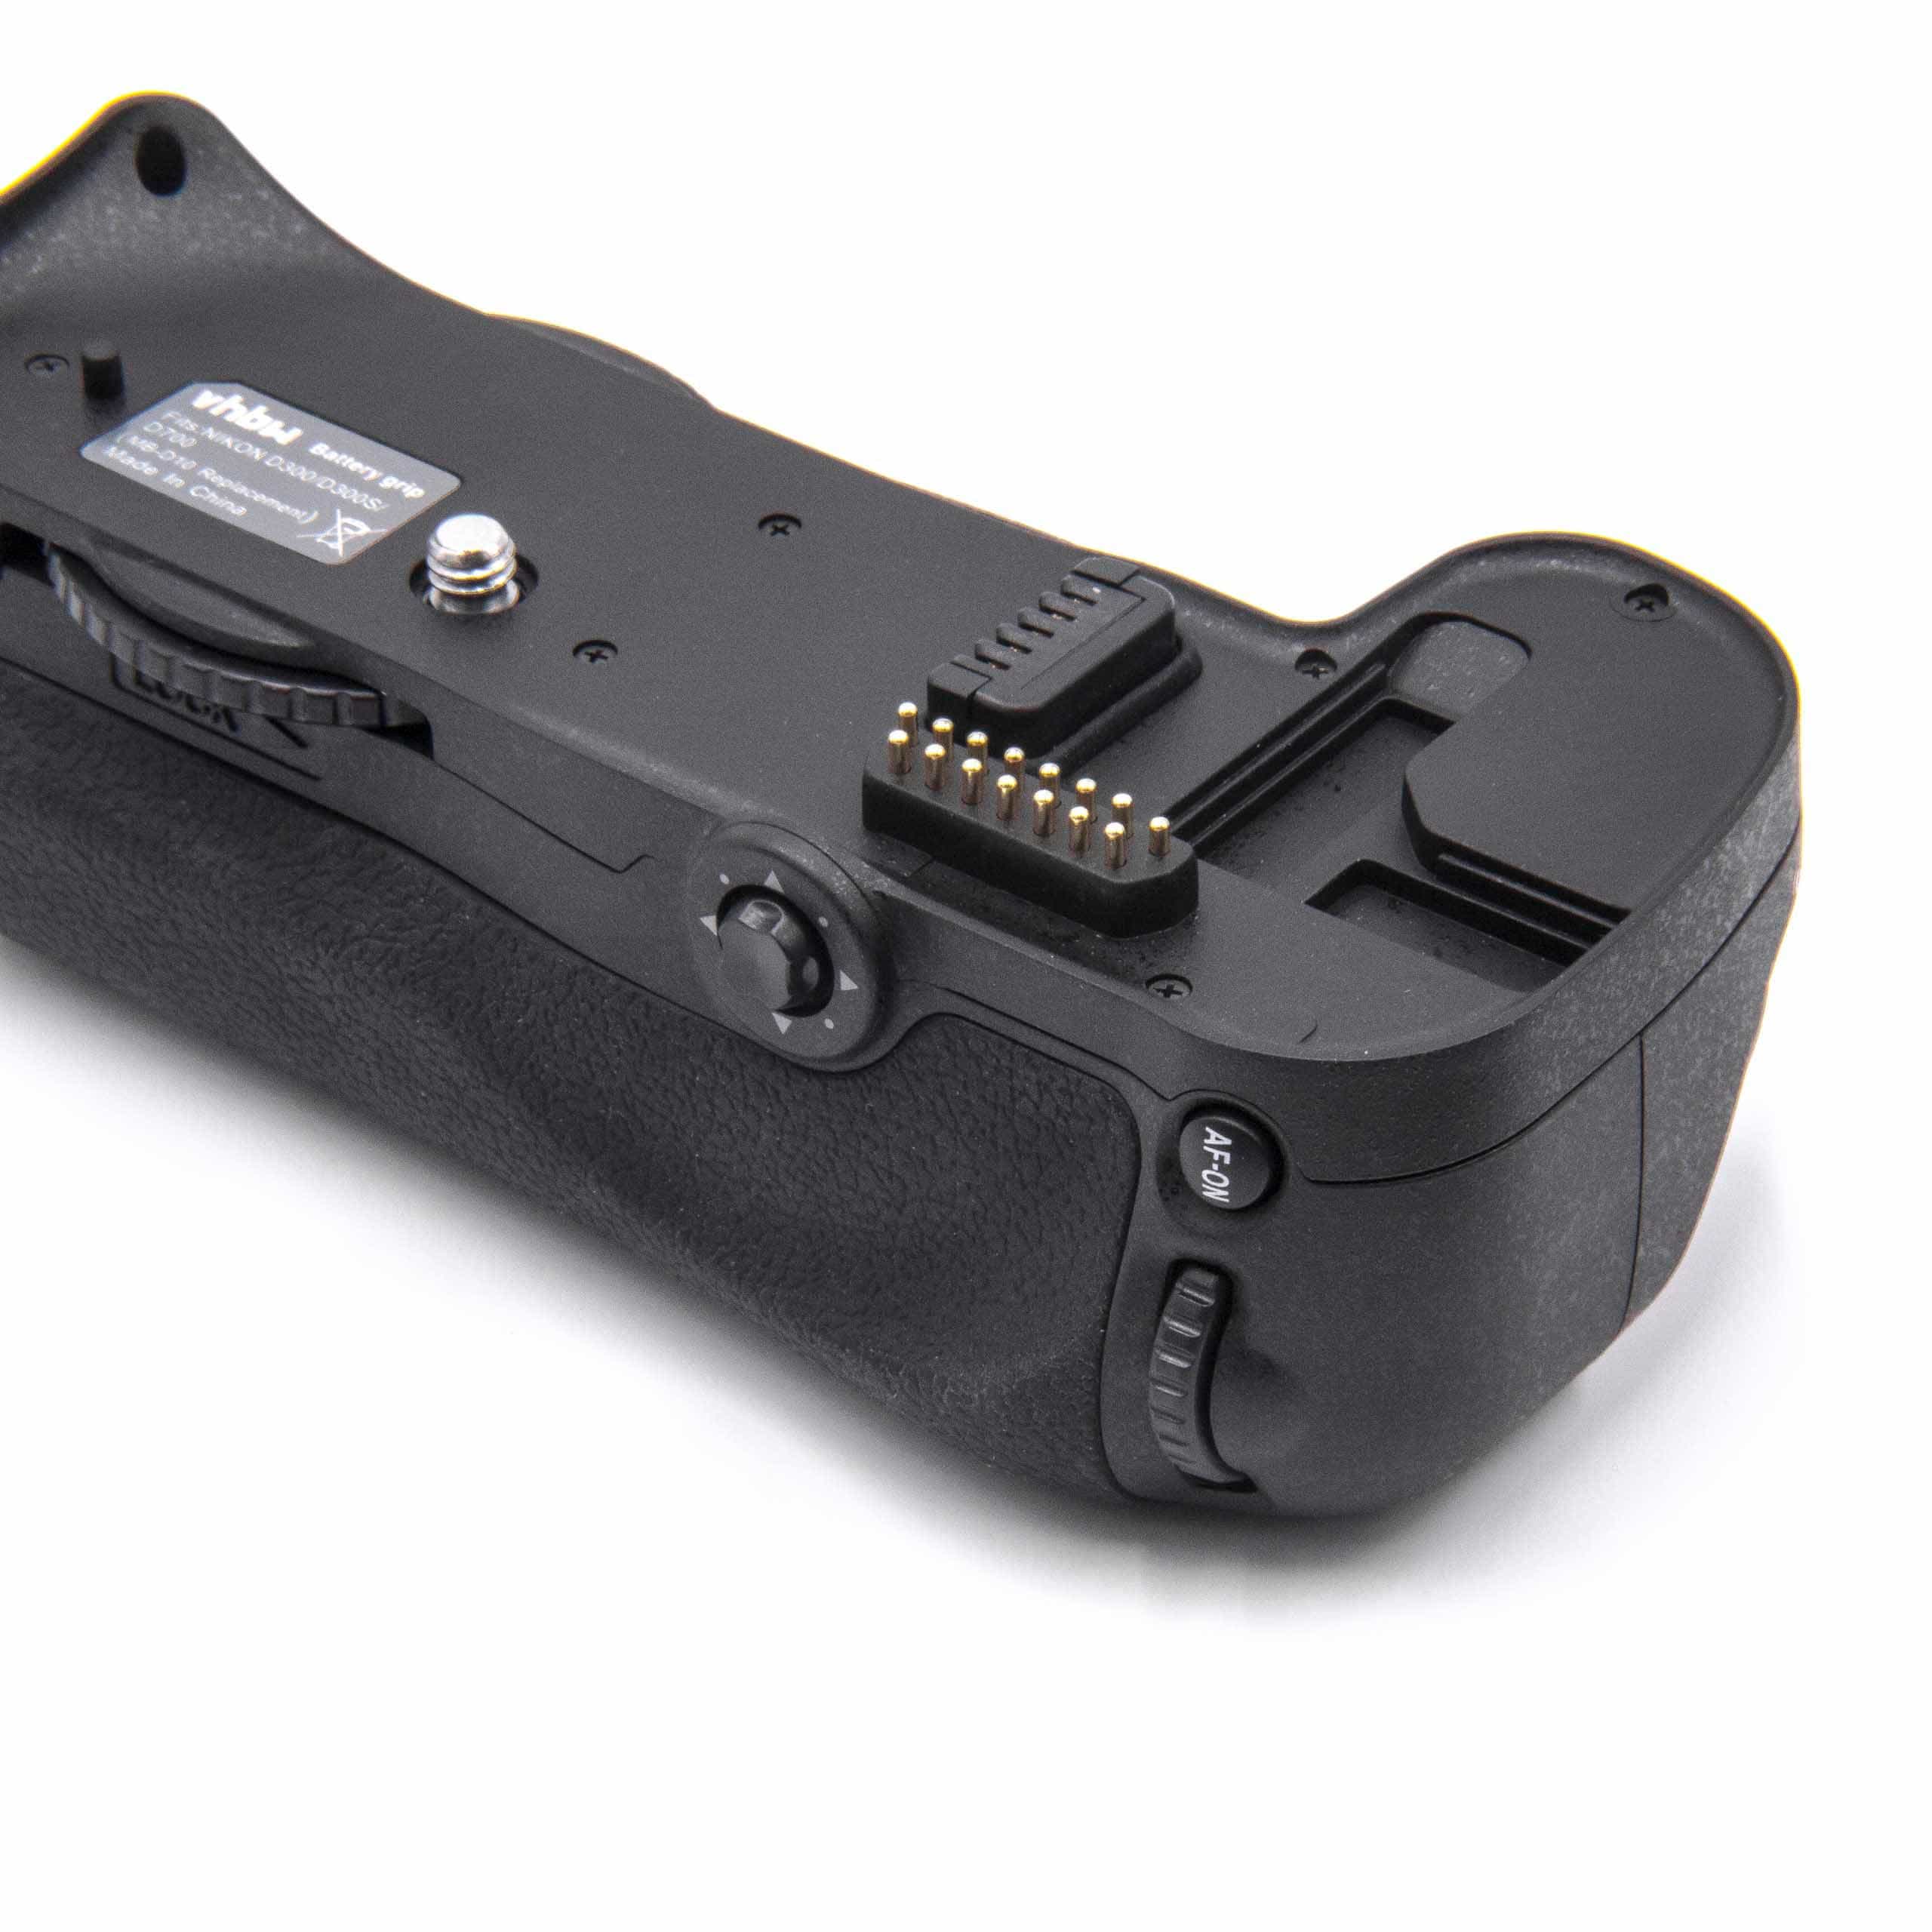 Batterie grip remplace Nikon MB-D10 pour appareil photo Nikon - avec molette 